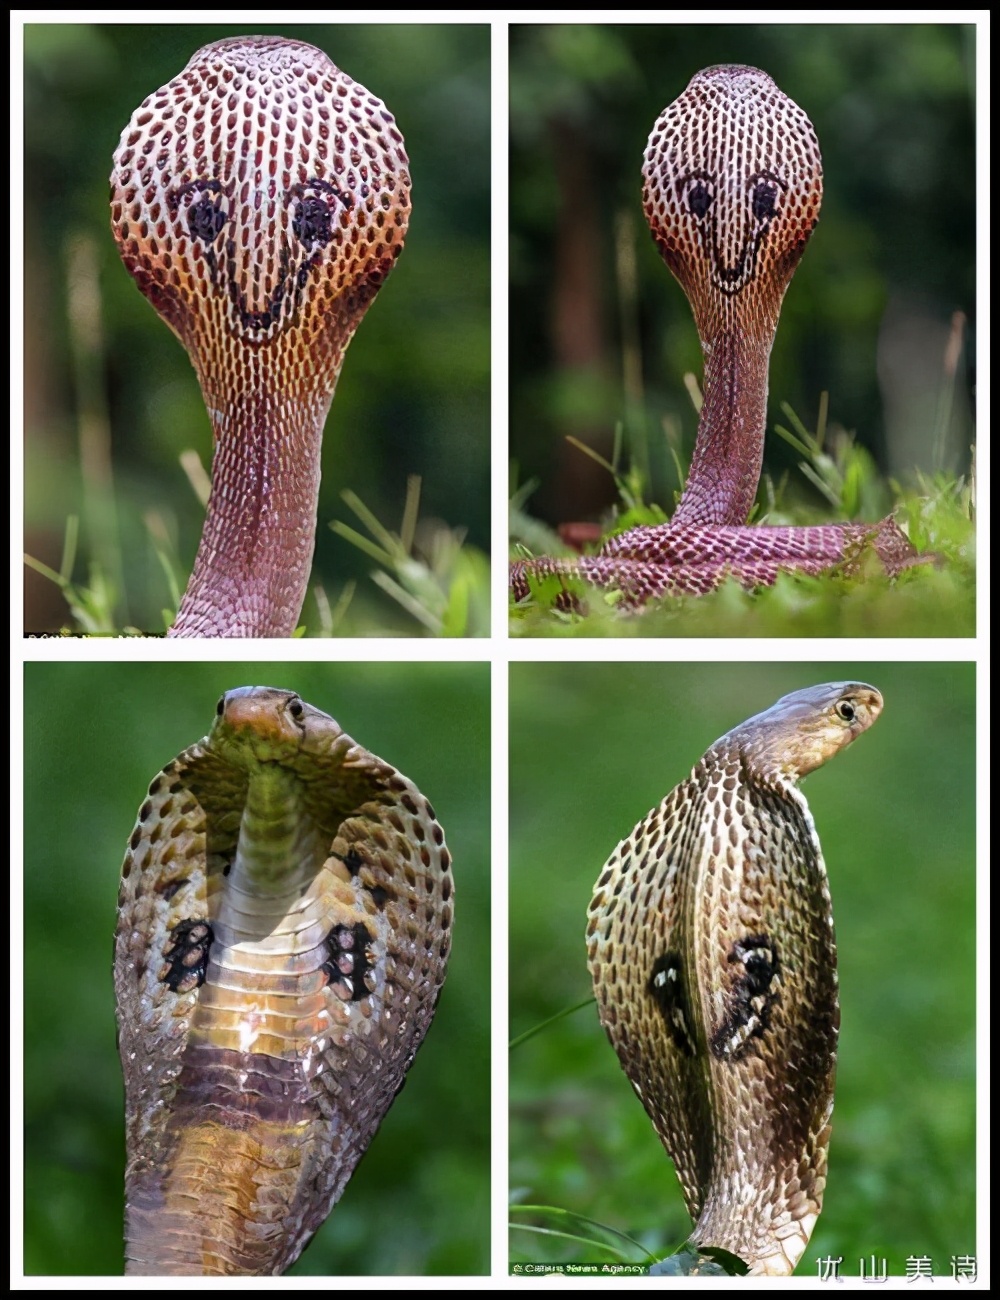 原来眼镜蛇也分很多种,怎样区分眼镜蛇的种类,答案就是看花纹